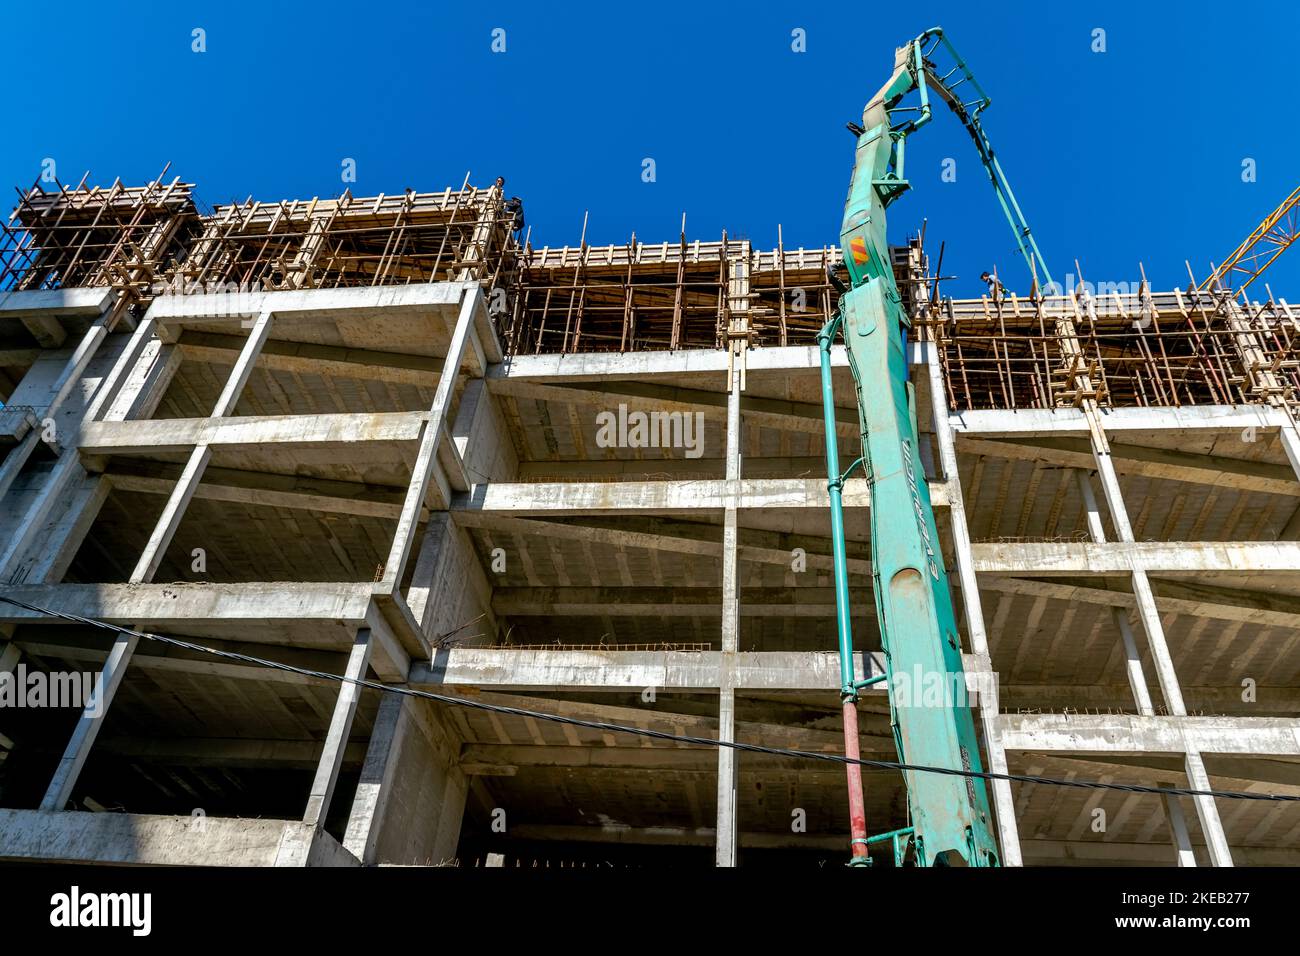 Betonplatten auf einer Baustelle gießen, mit Kränen und Gießrohren, unbekannte Arbeiter auf dem Dach des Stahlbetons. Stockfoto